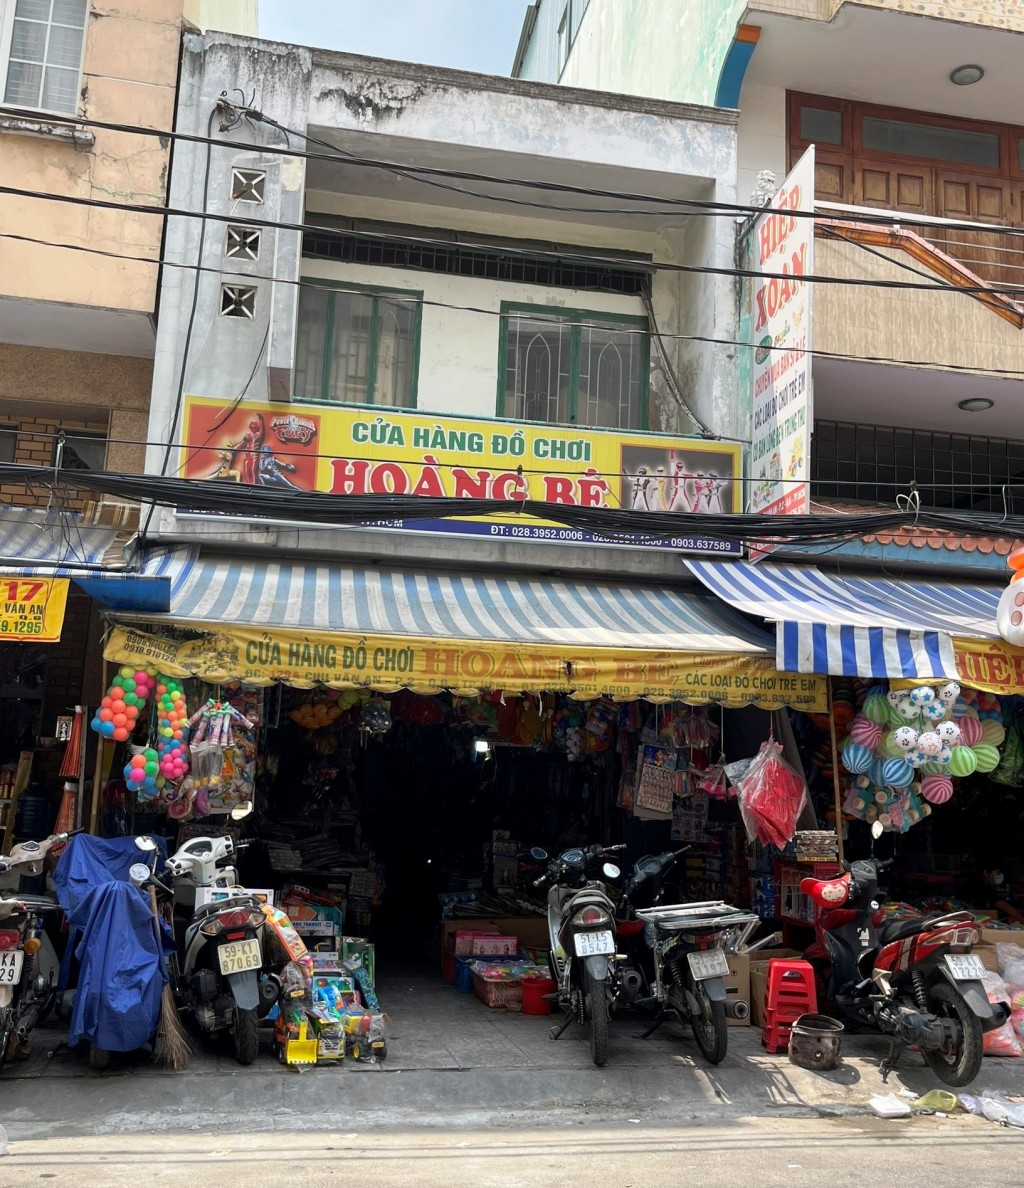 Mặt bằng khu đất 123A Chu Văn An, Phường 2, Quận 6 được GEMEXIM đăng ký là Cửa hàng kinh doanh vật tư 123 Chu Văn An nhưng thực tế lại là “Cửa hàng đồ chơi Hoàng Bé”